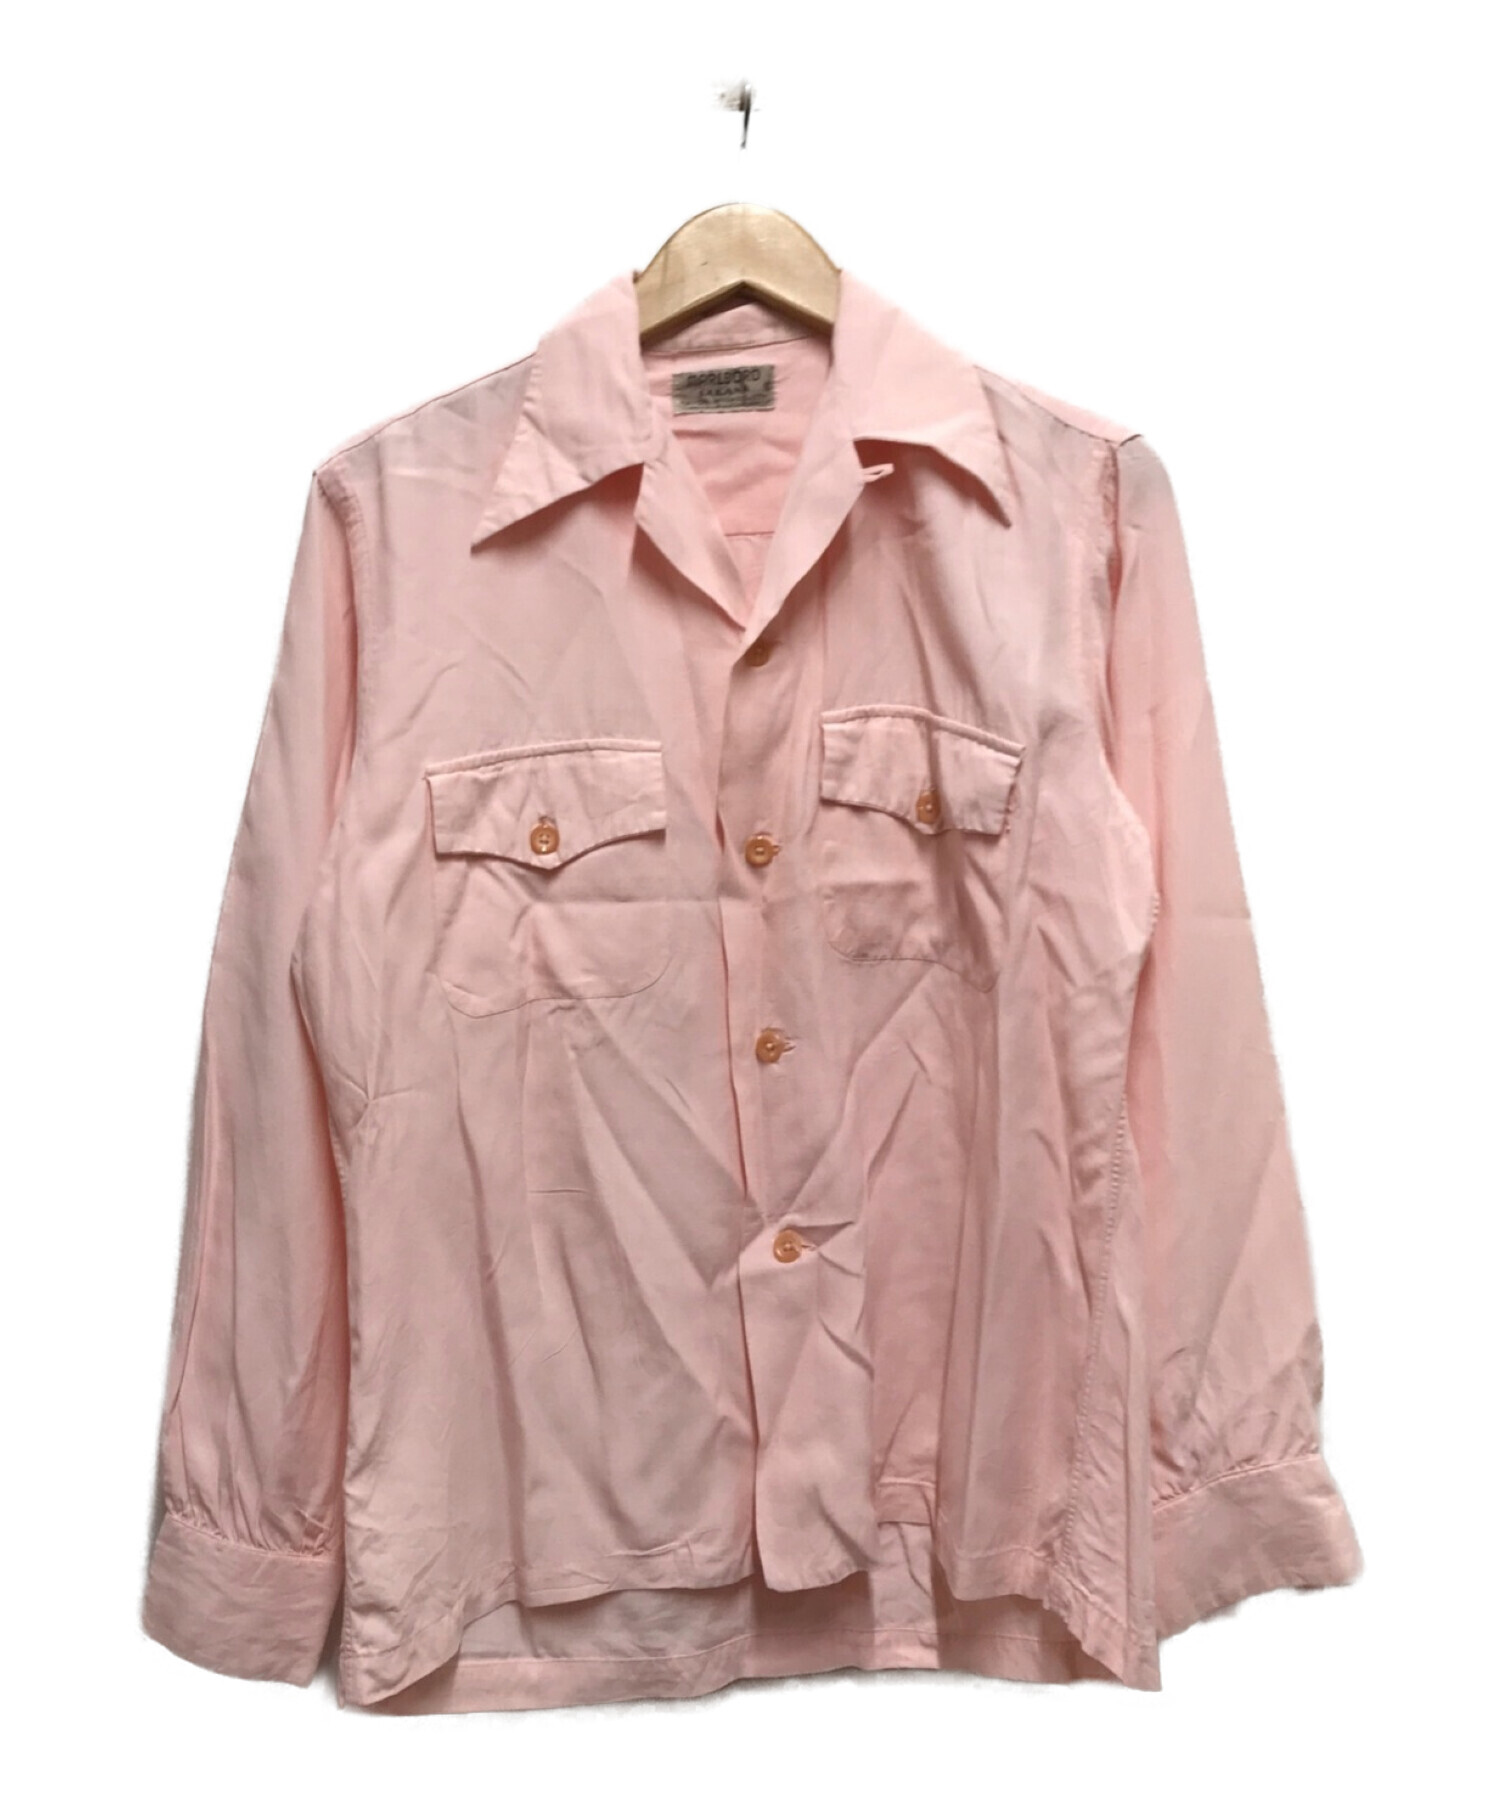 MARLBORO SAKANA (マルボロ サカナ) 50‘Sレーヨンオープンカラーシャツ ピンク サイズ:S